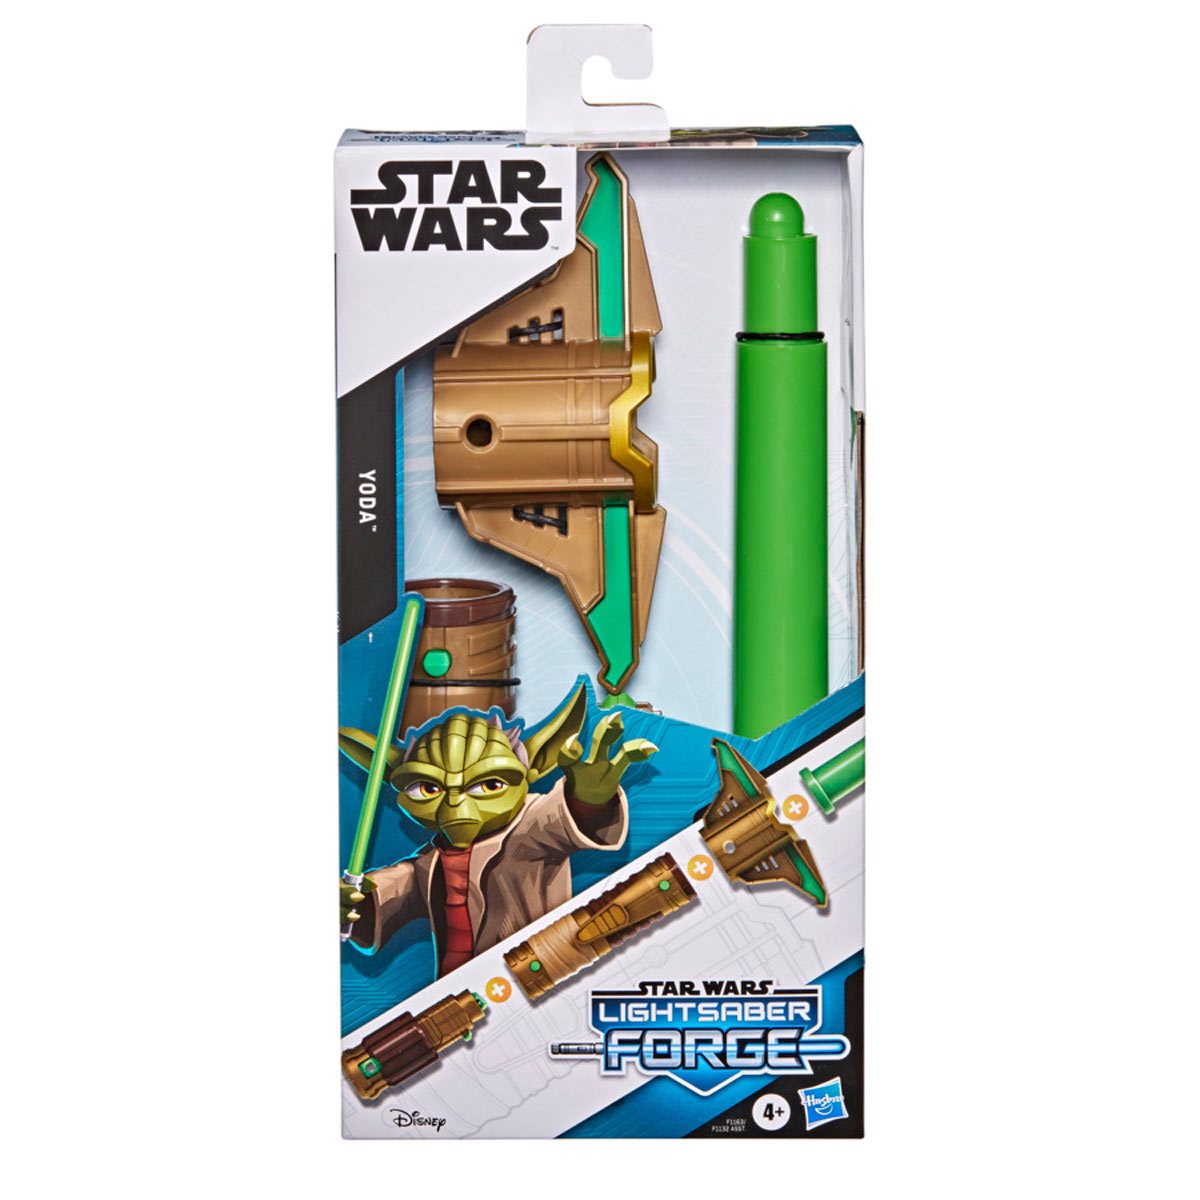 Yoda Lightsaber Forge - Star Wars Hasbro